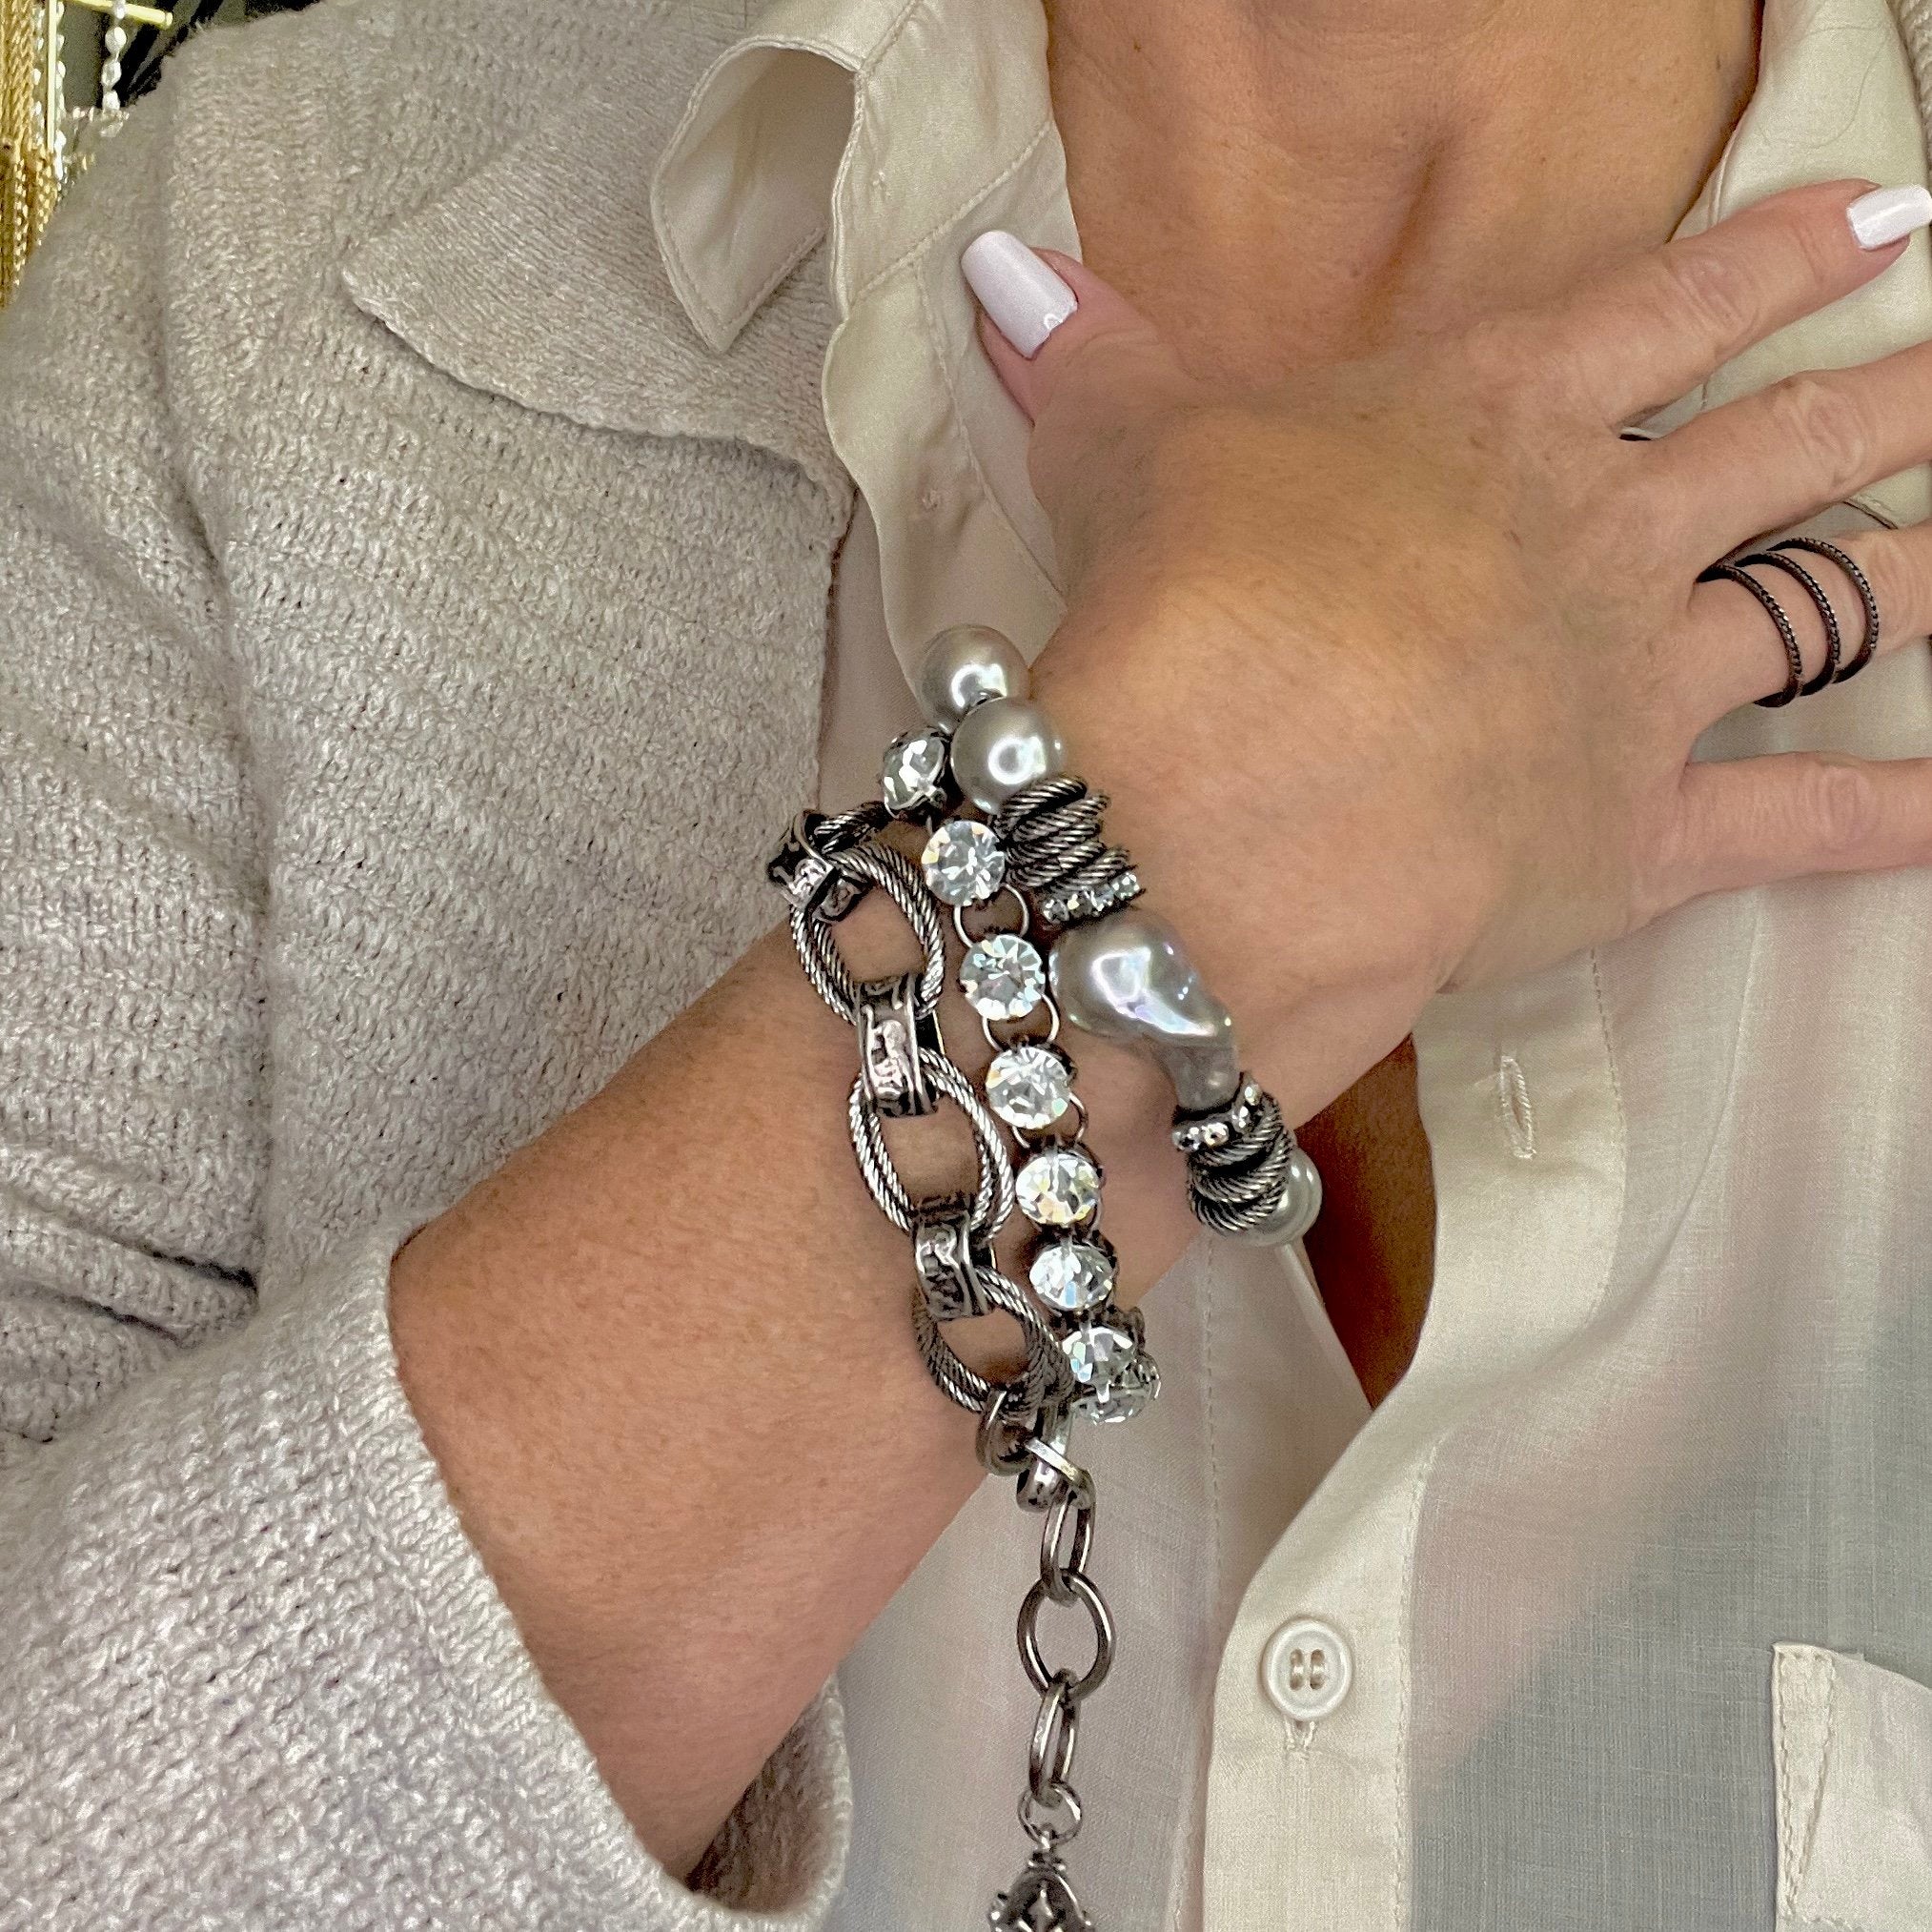 Mimi Swarovski Crystal Bracelet in Aged Silver